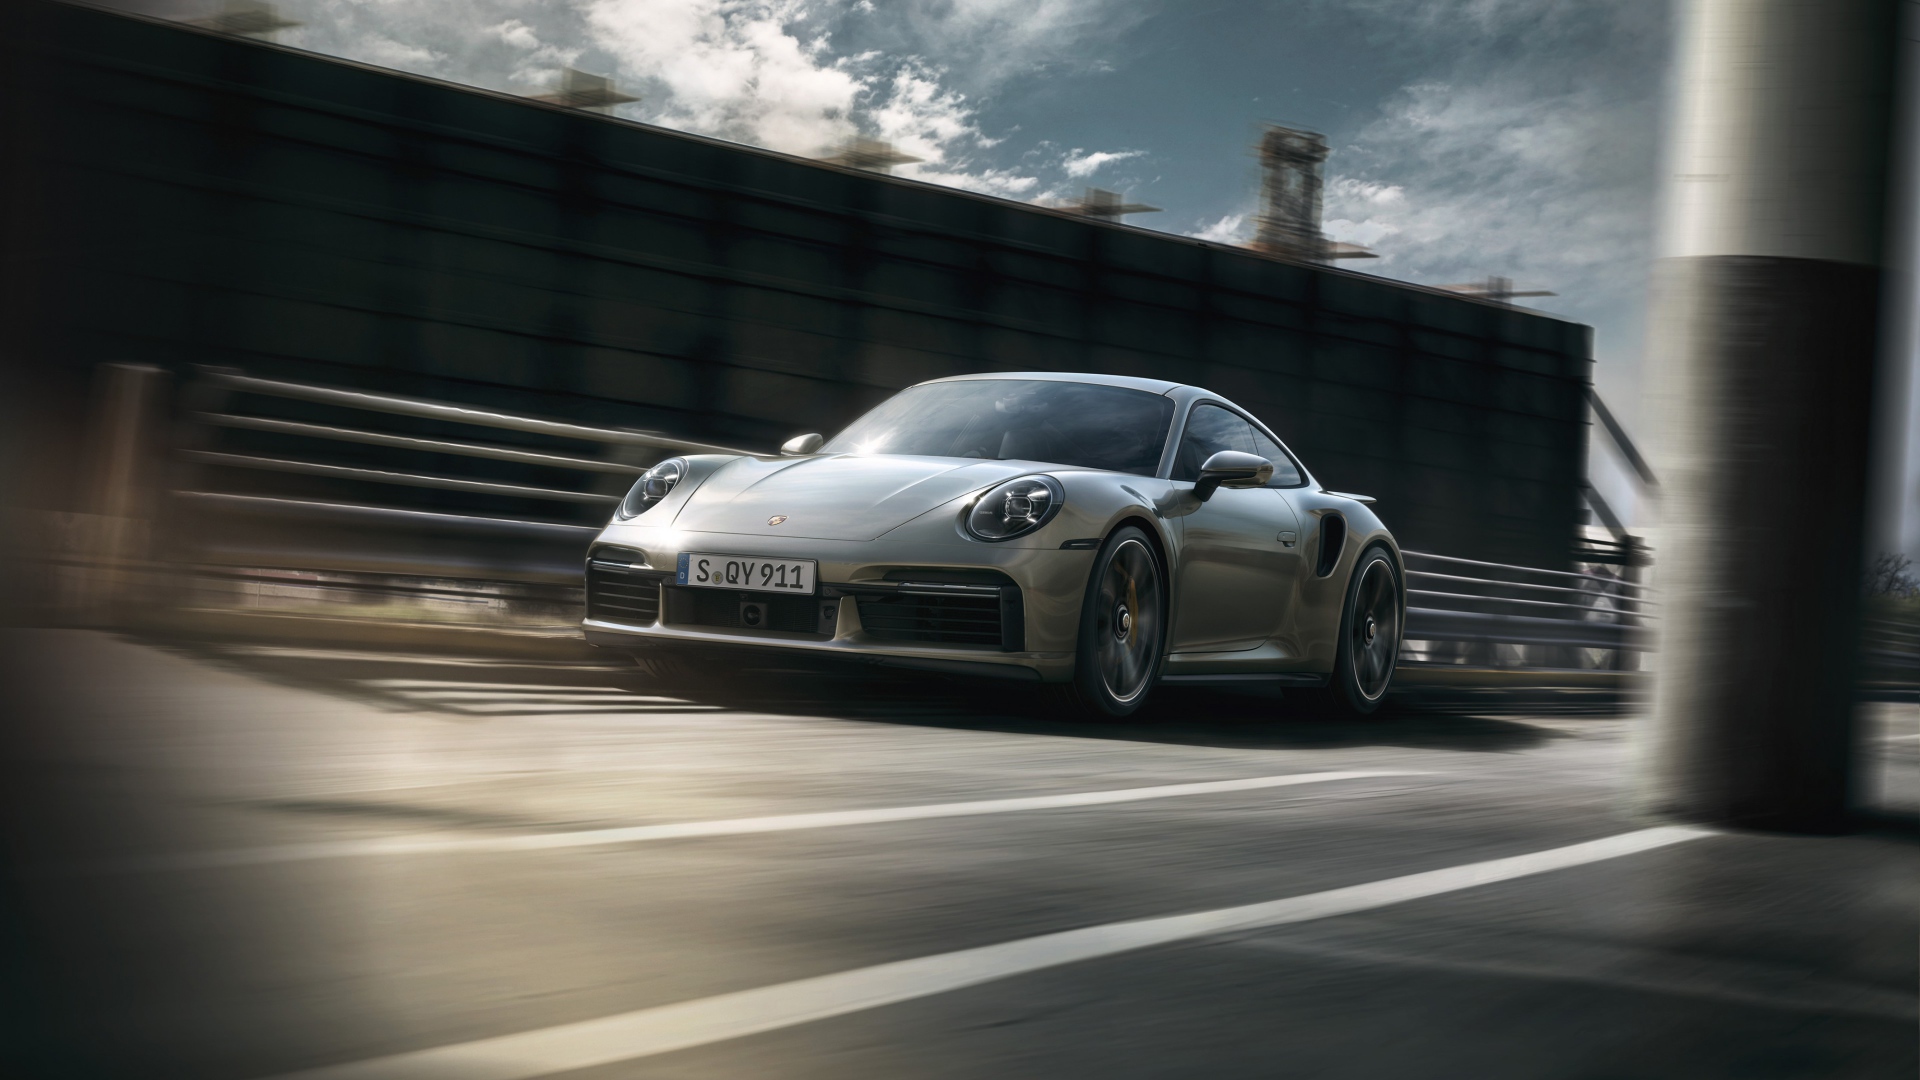 Быстрый компактный автомобиль Porsche 911 Turbo S 2020 года на трассе